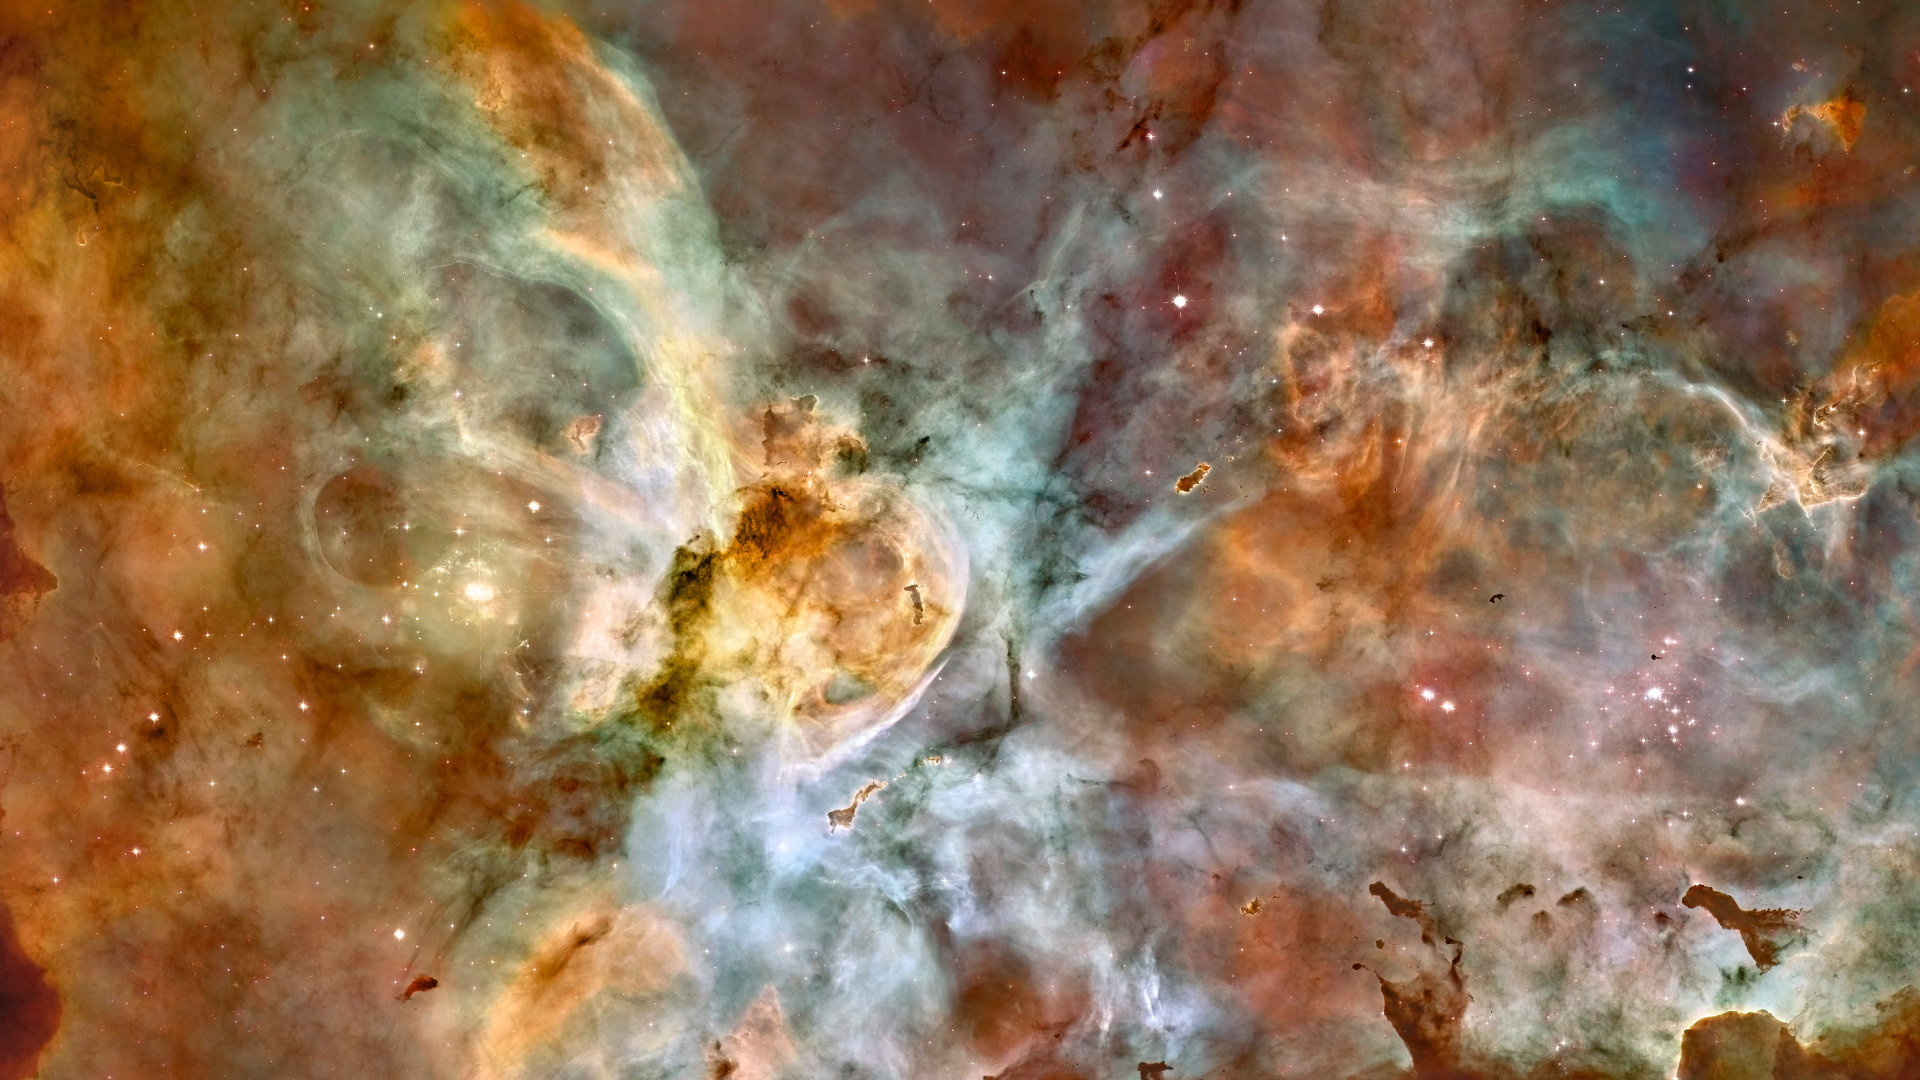 Carina星云, 哈勃太空望远镜, 明星, 空间, 天文学对象 壁纸 1920x1080 允许